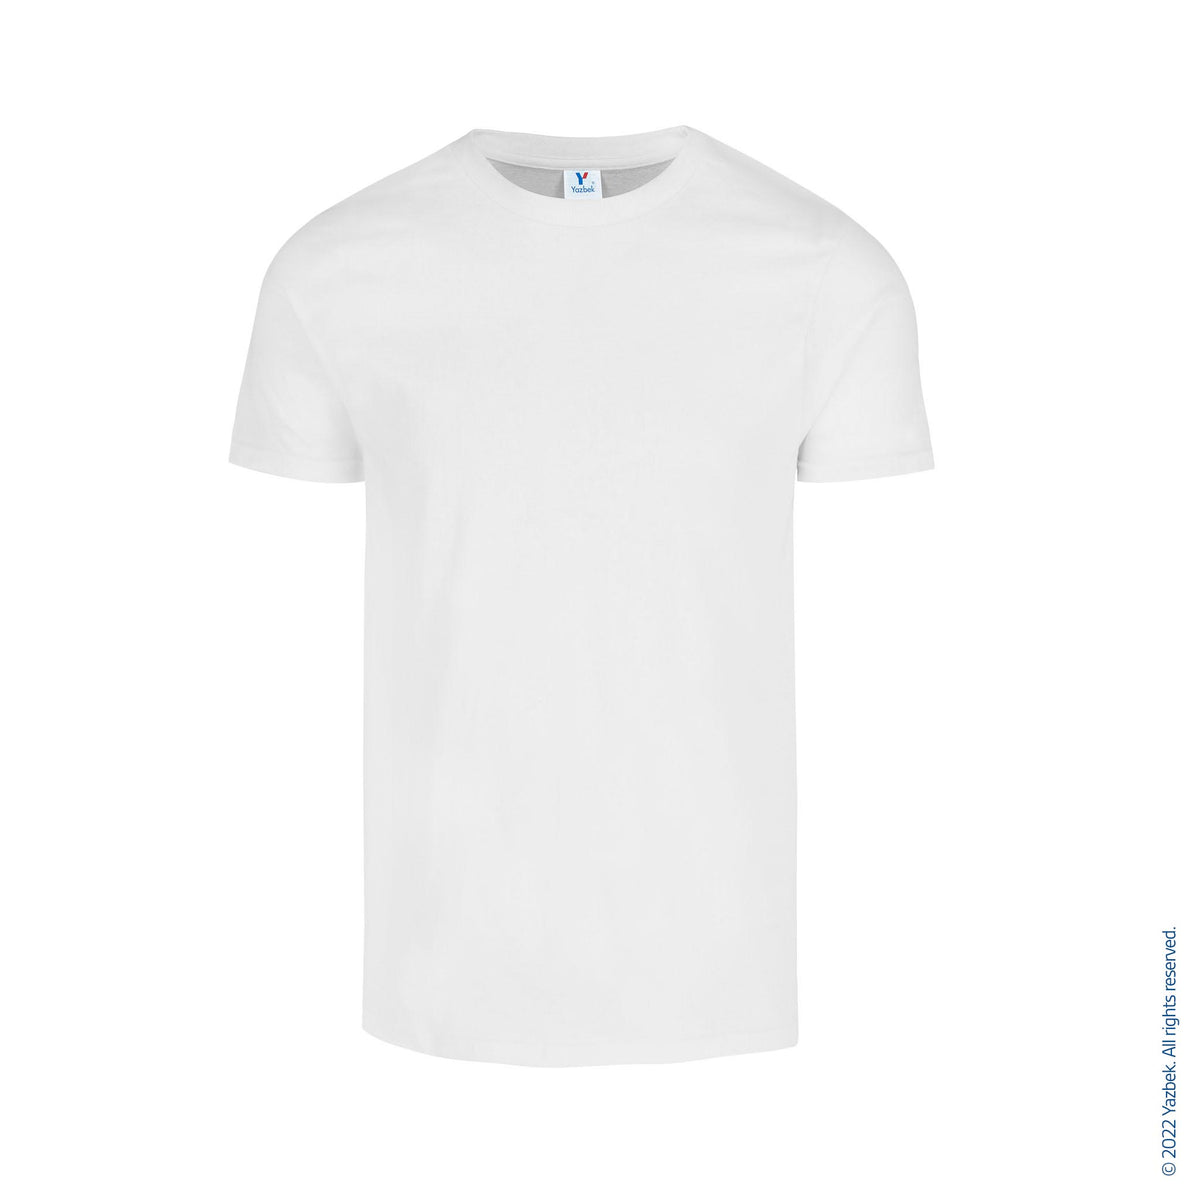 Men's Crew Neck Short Sleeve T-Shirt (White) – Yazbek USA Mint